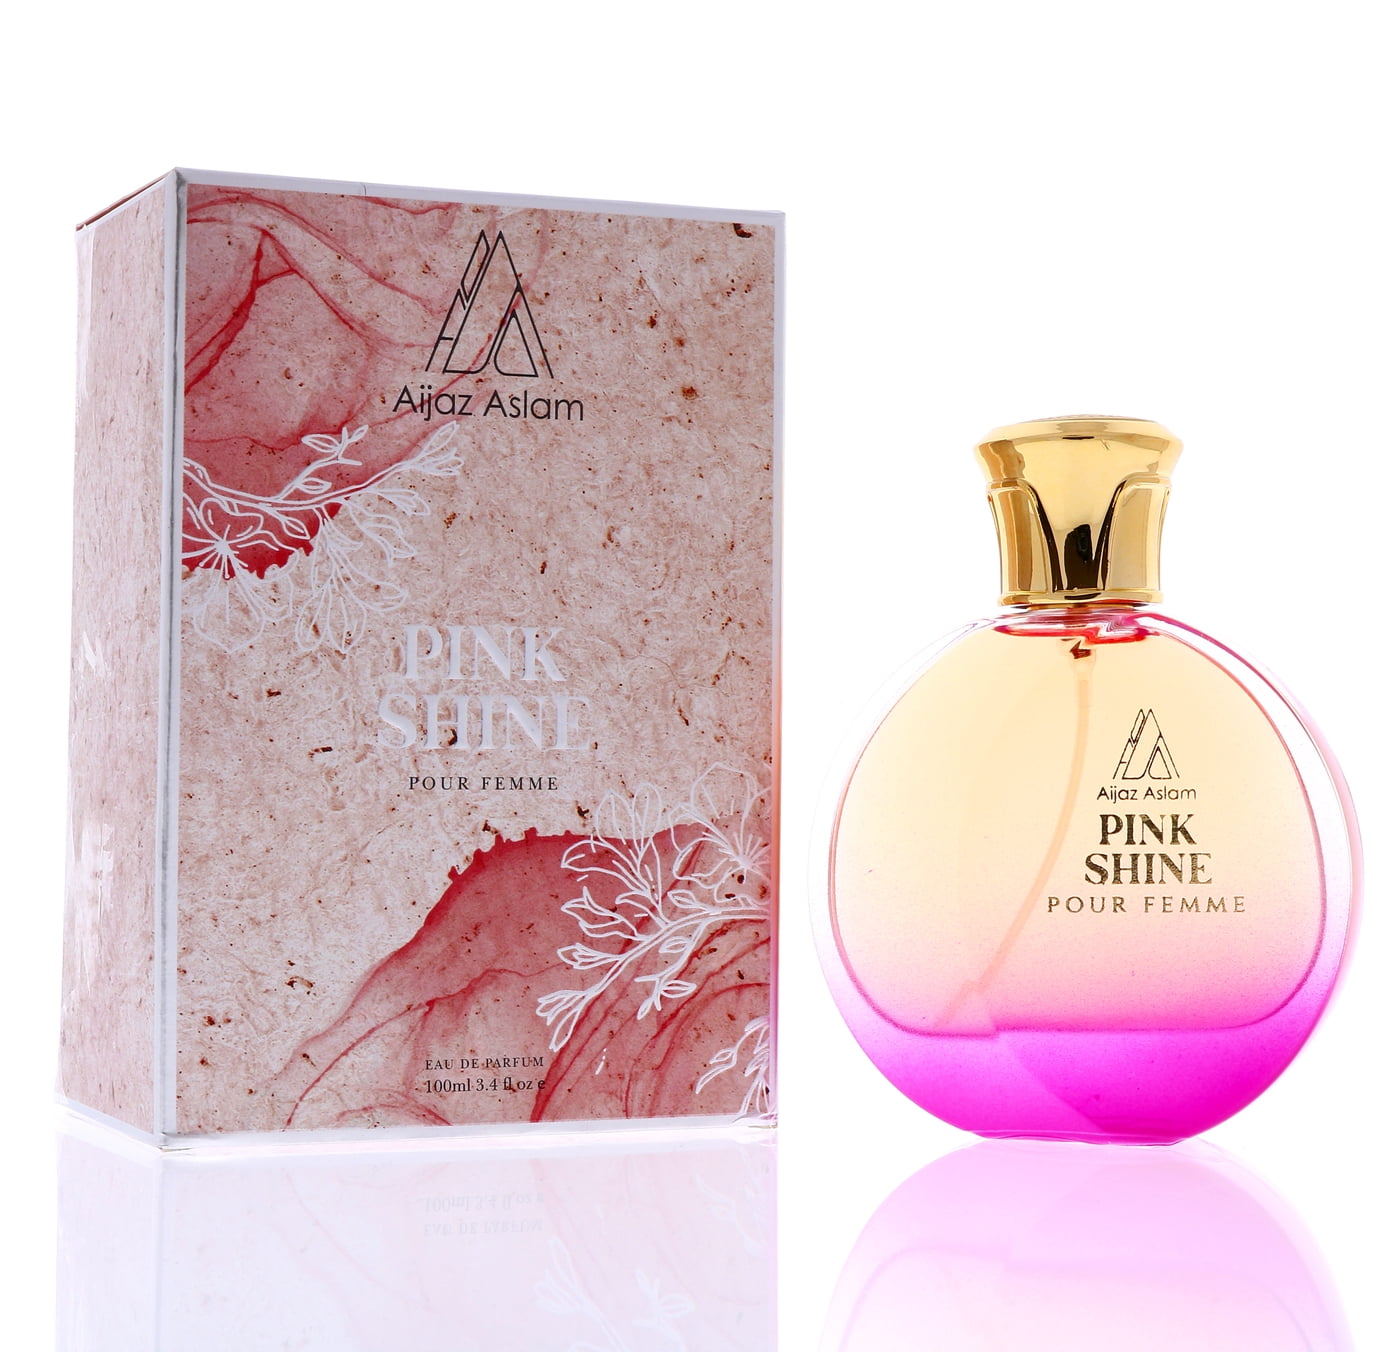 Pink Sugar Eau de Toilette, Perfume for Women, 3.4 oz 